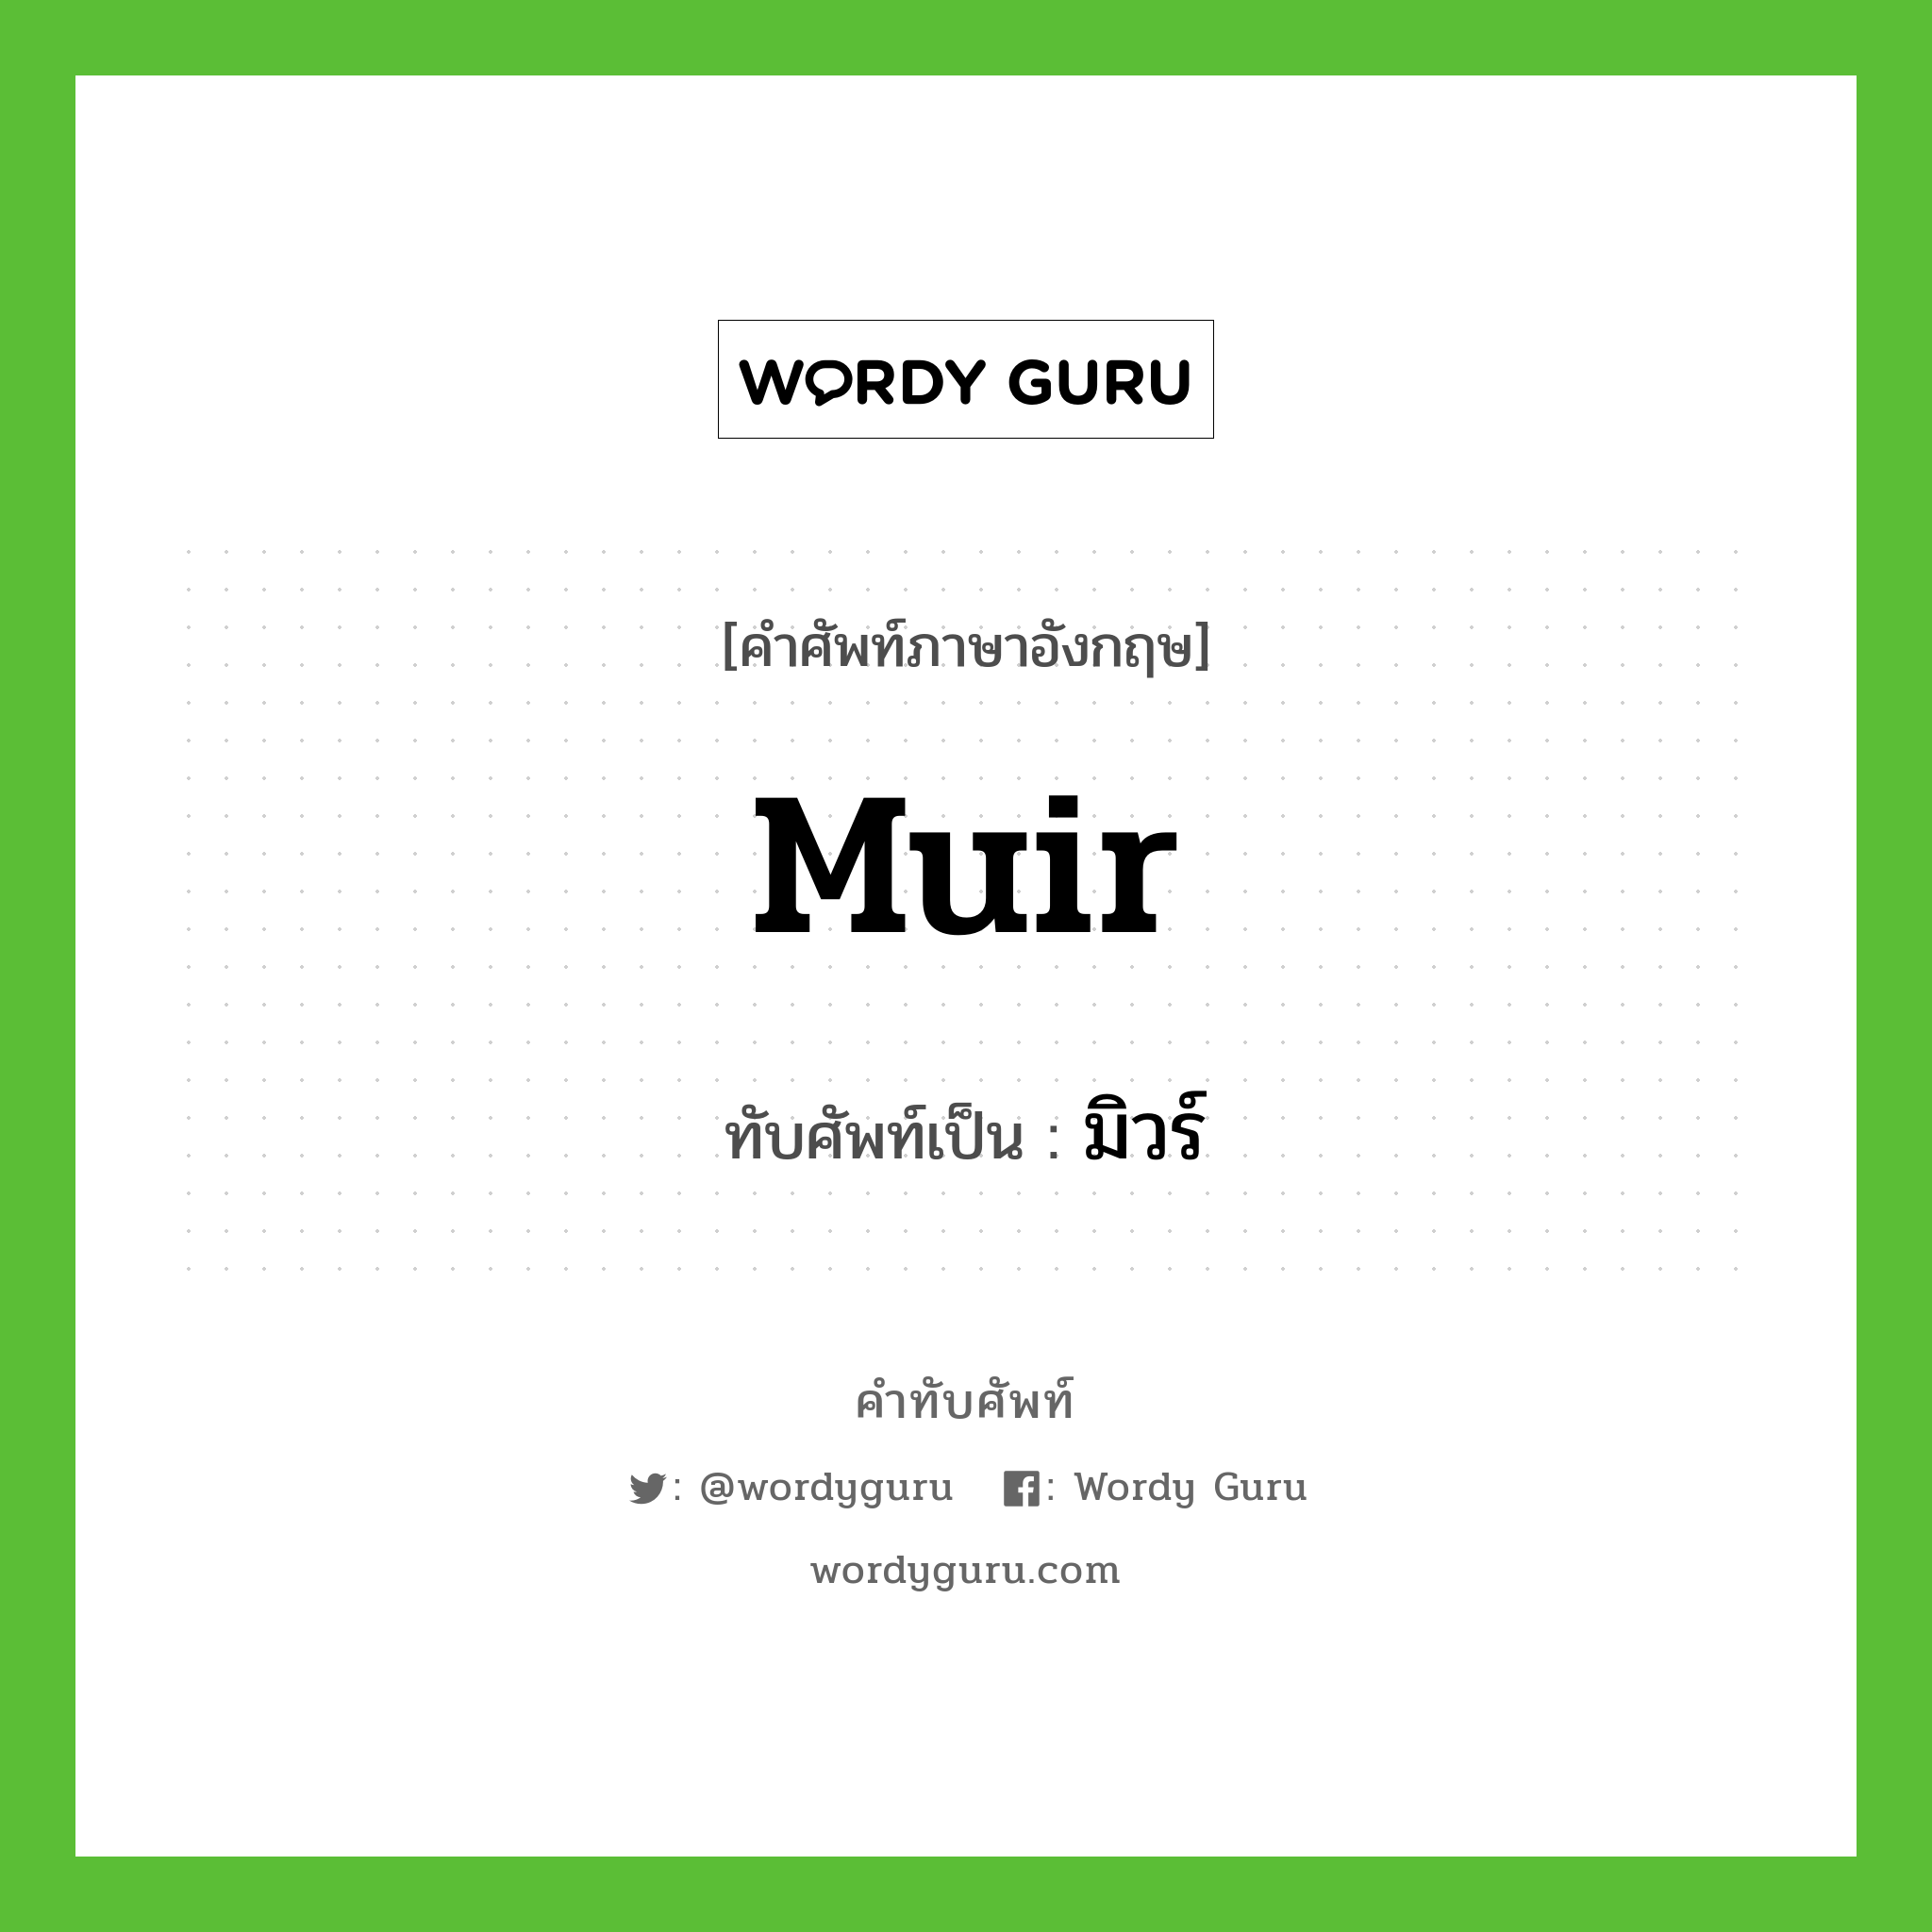 Muir เขียนเป็นคำไทยว่าอะไร?, คำศัพท์ภาษาอังกฤษ Muir ทับศัพท์เป็น มิวร์